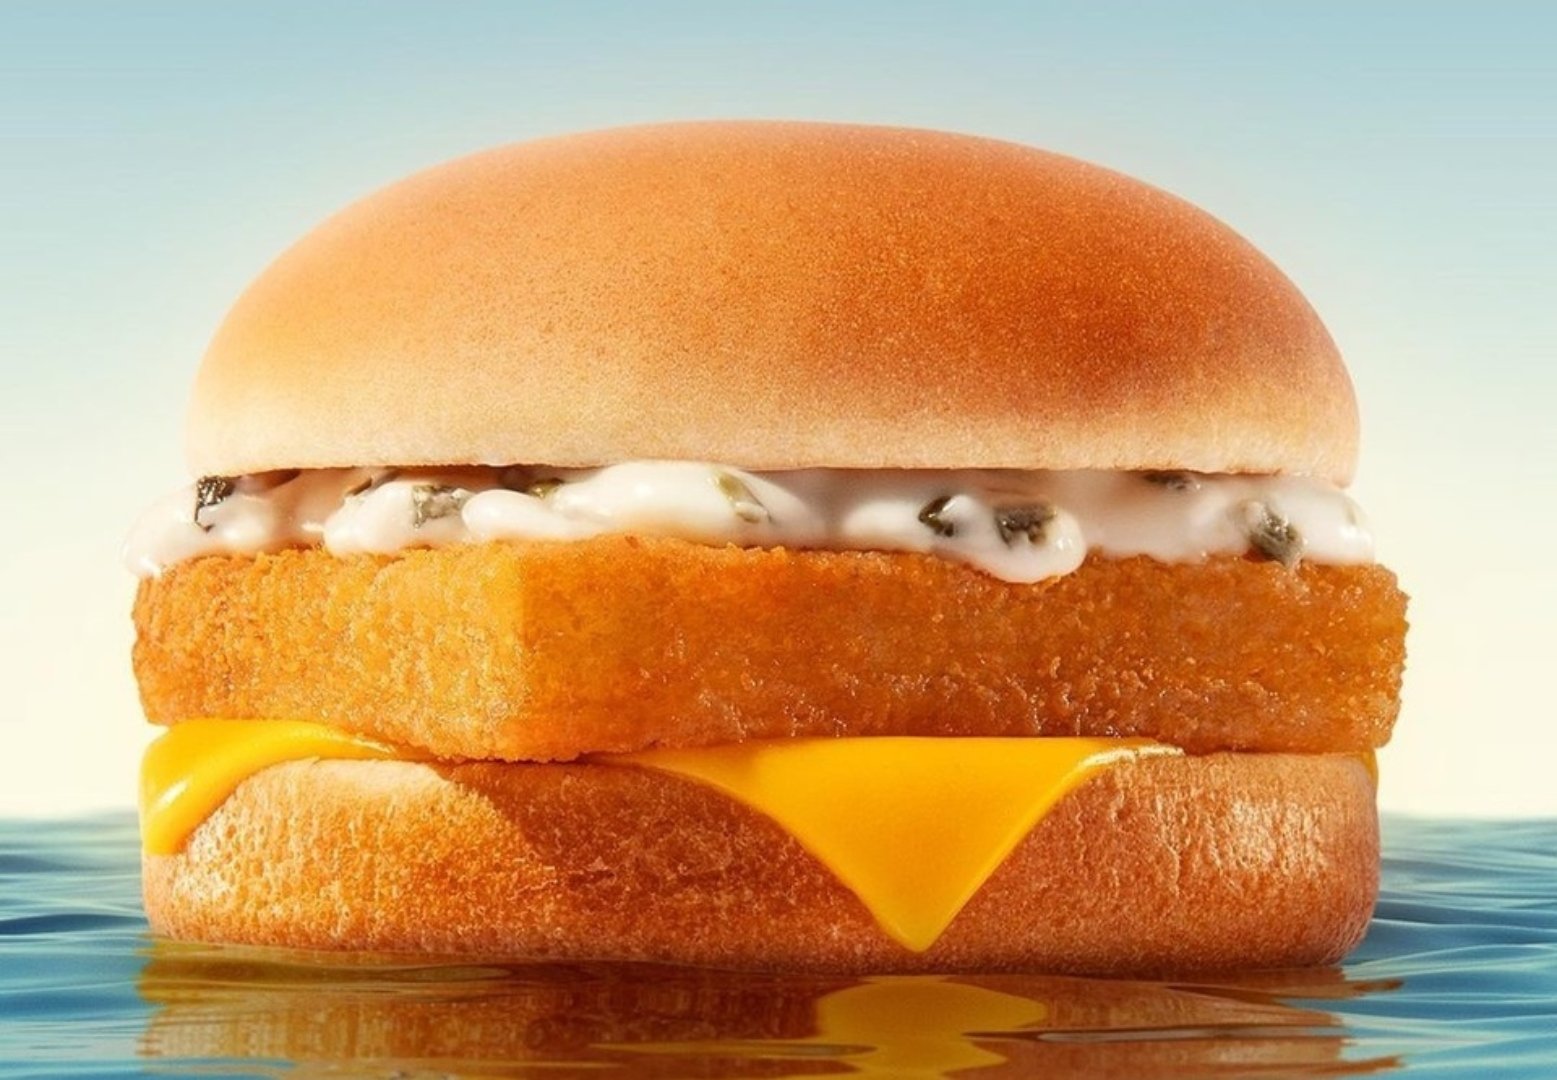 Sanduíche de peixe empanado com queijo e molho tártaro do McDonald's estrela uma história de guerrilha, marketing e nostalgia